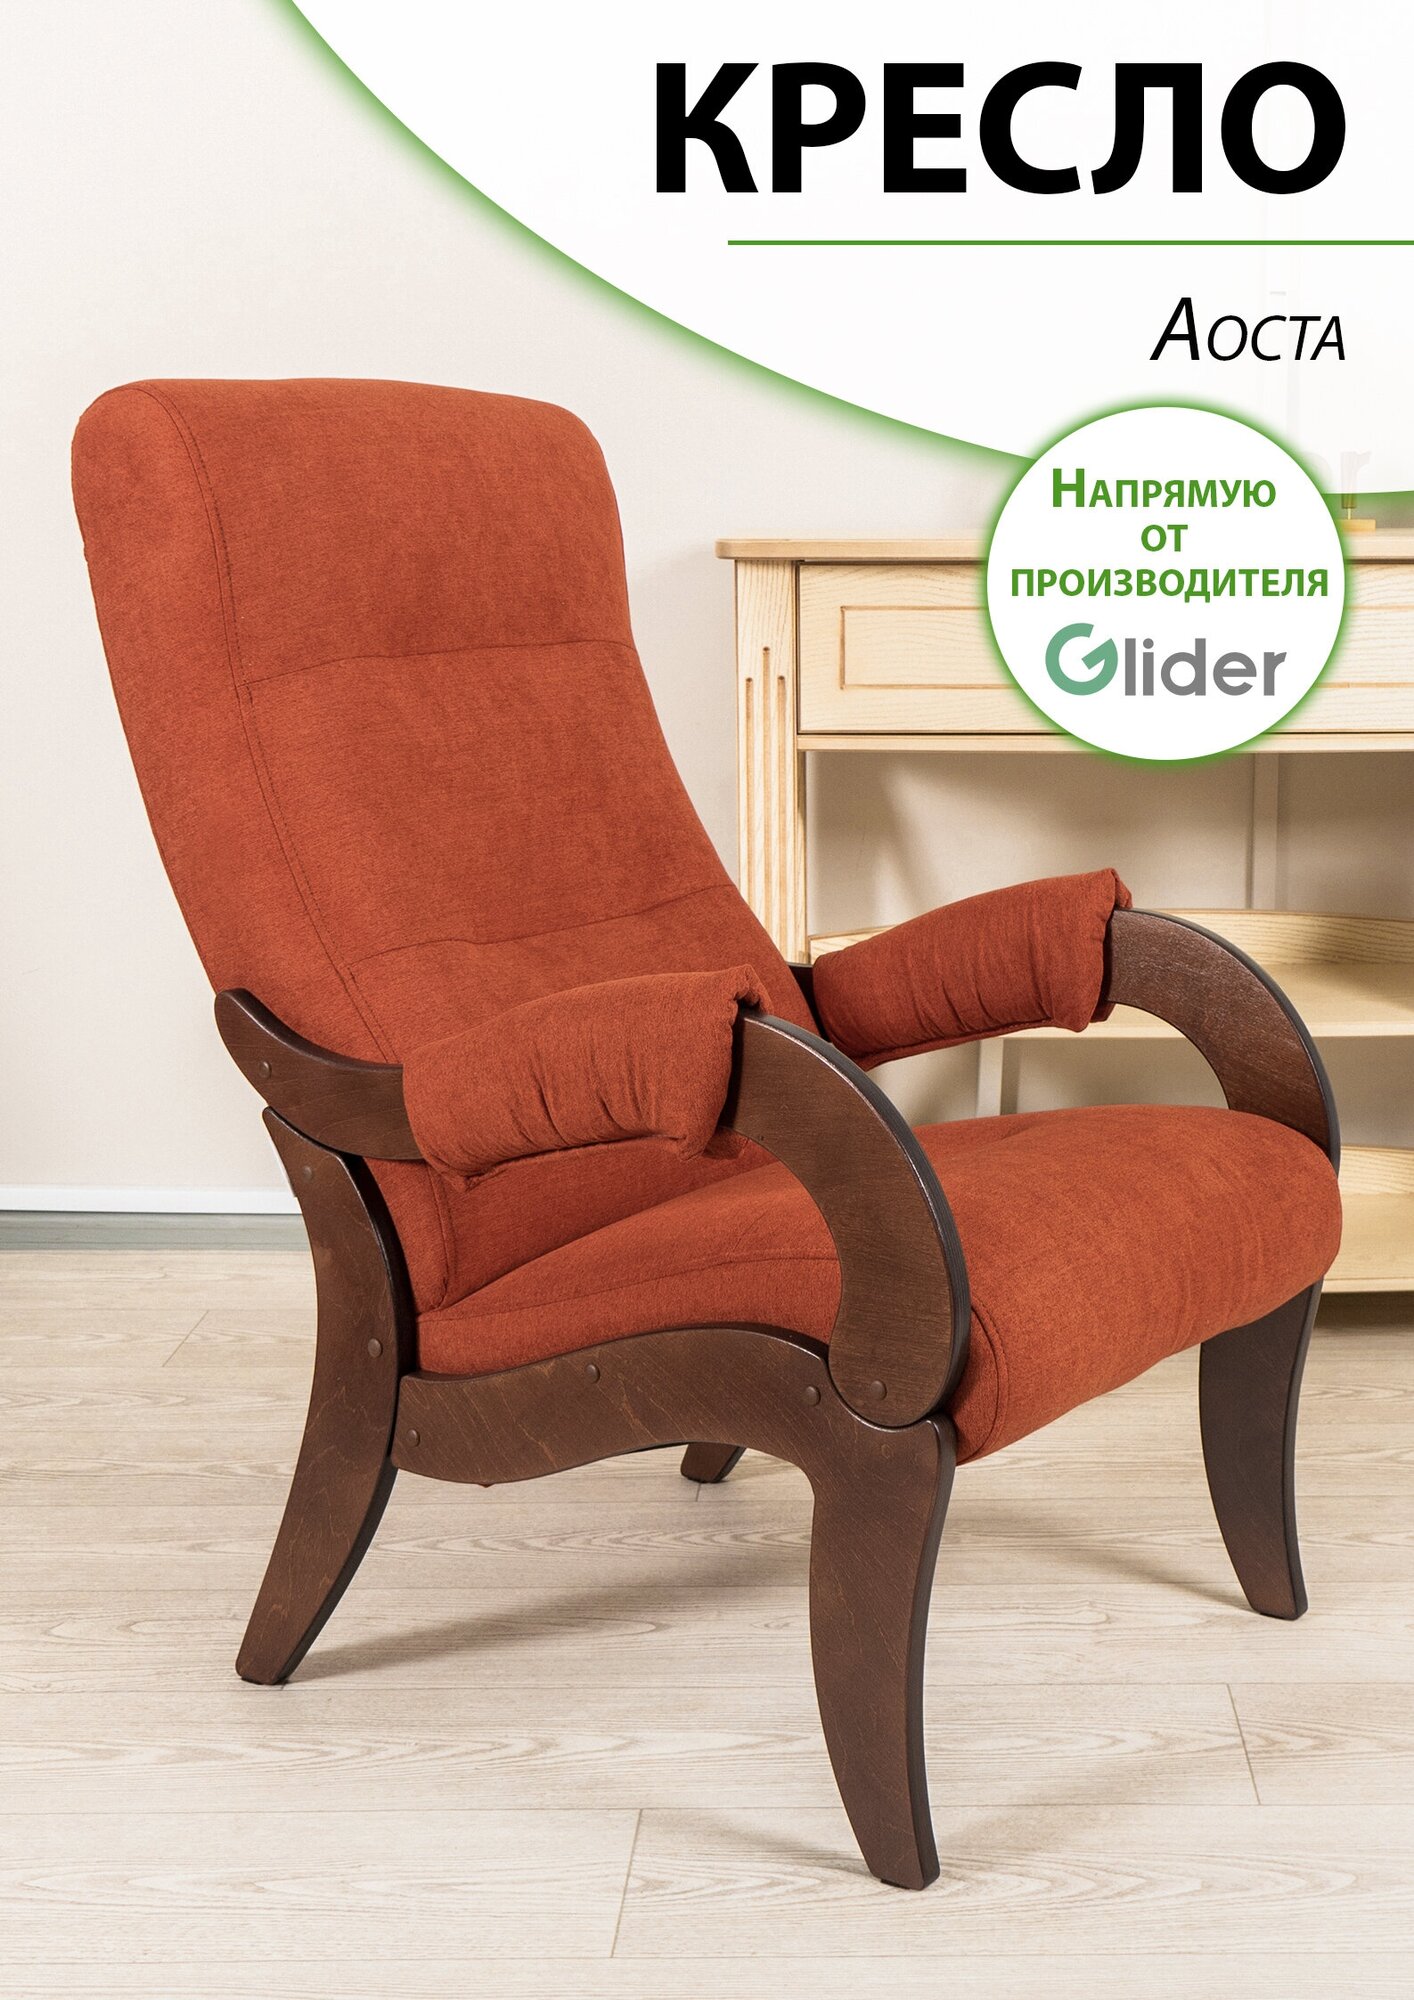 Кресло мягкое для дома и дачи Glider Аоста, цвет терракотовый, со спинкой для взрослых мягкое мебель для гостиной кухни прихожей дачи, в подарок.